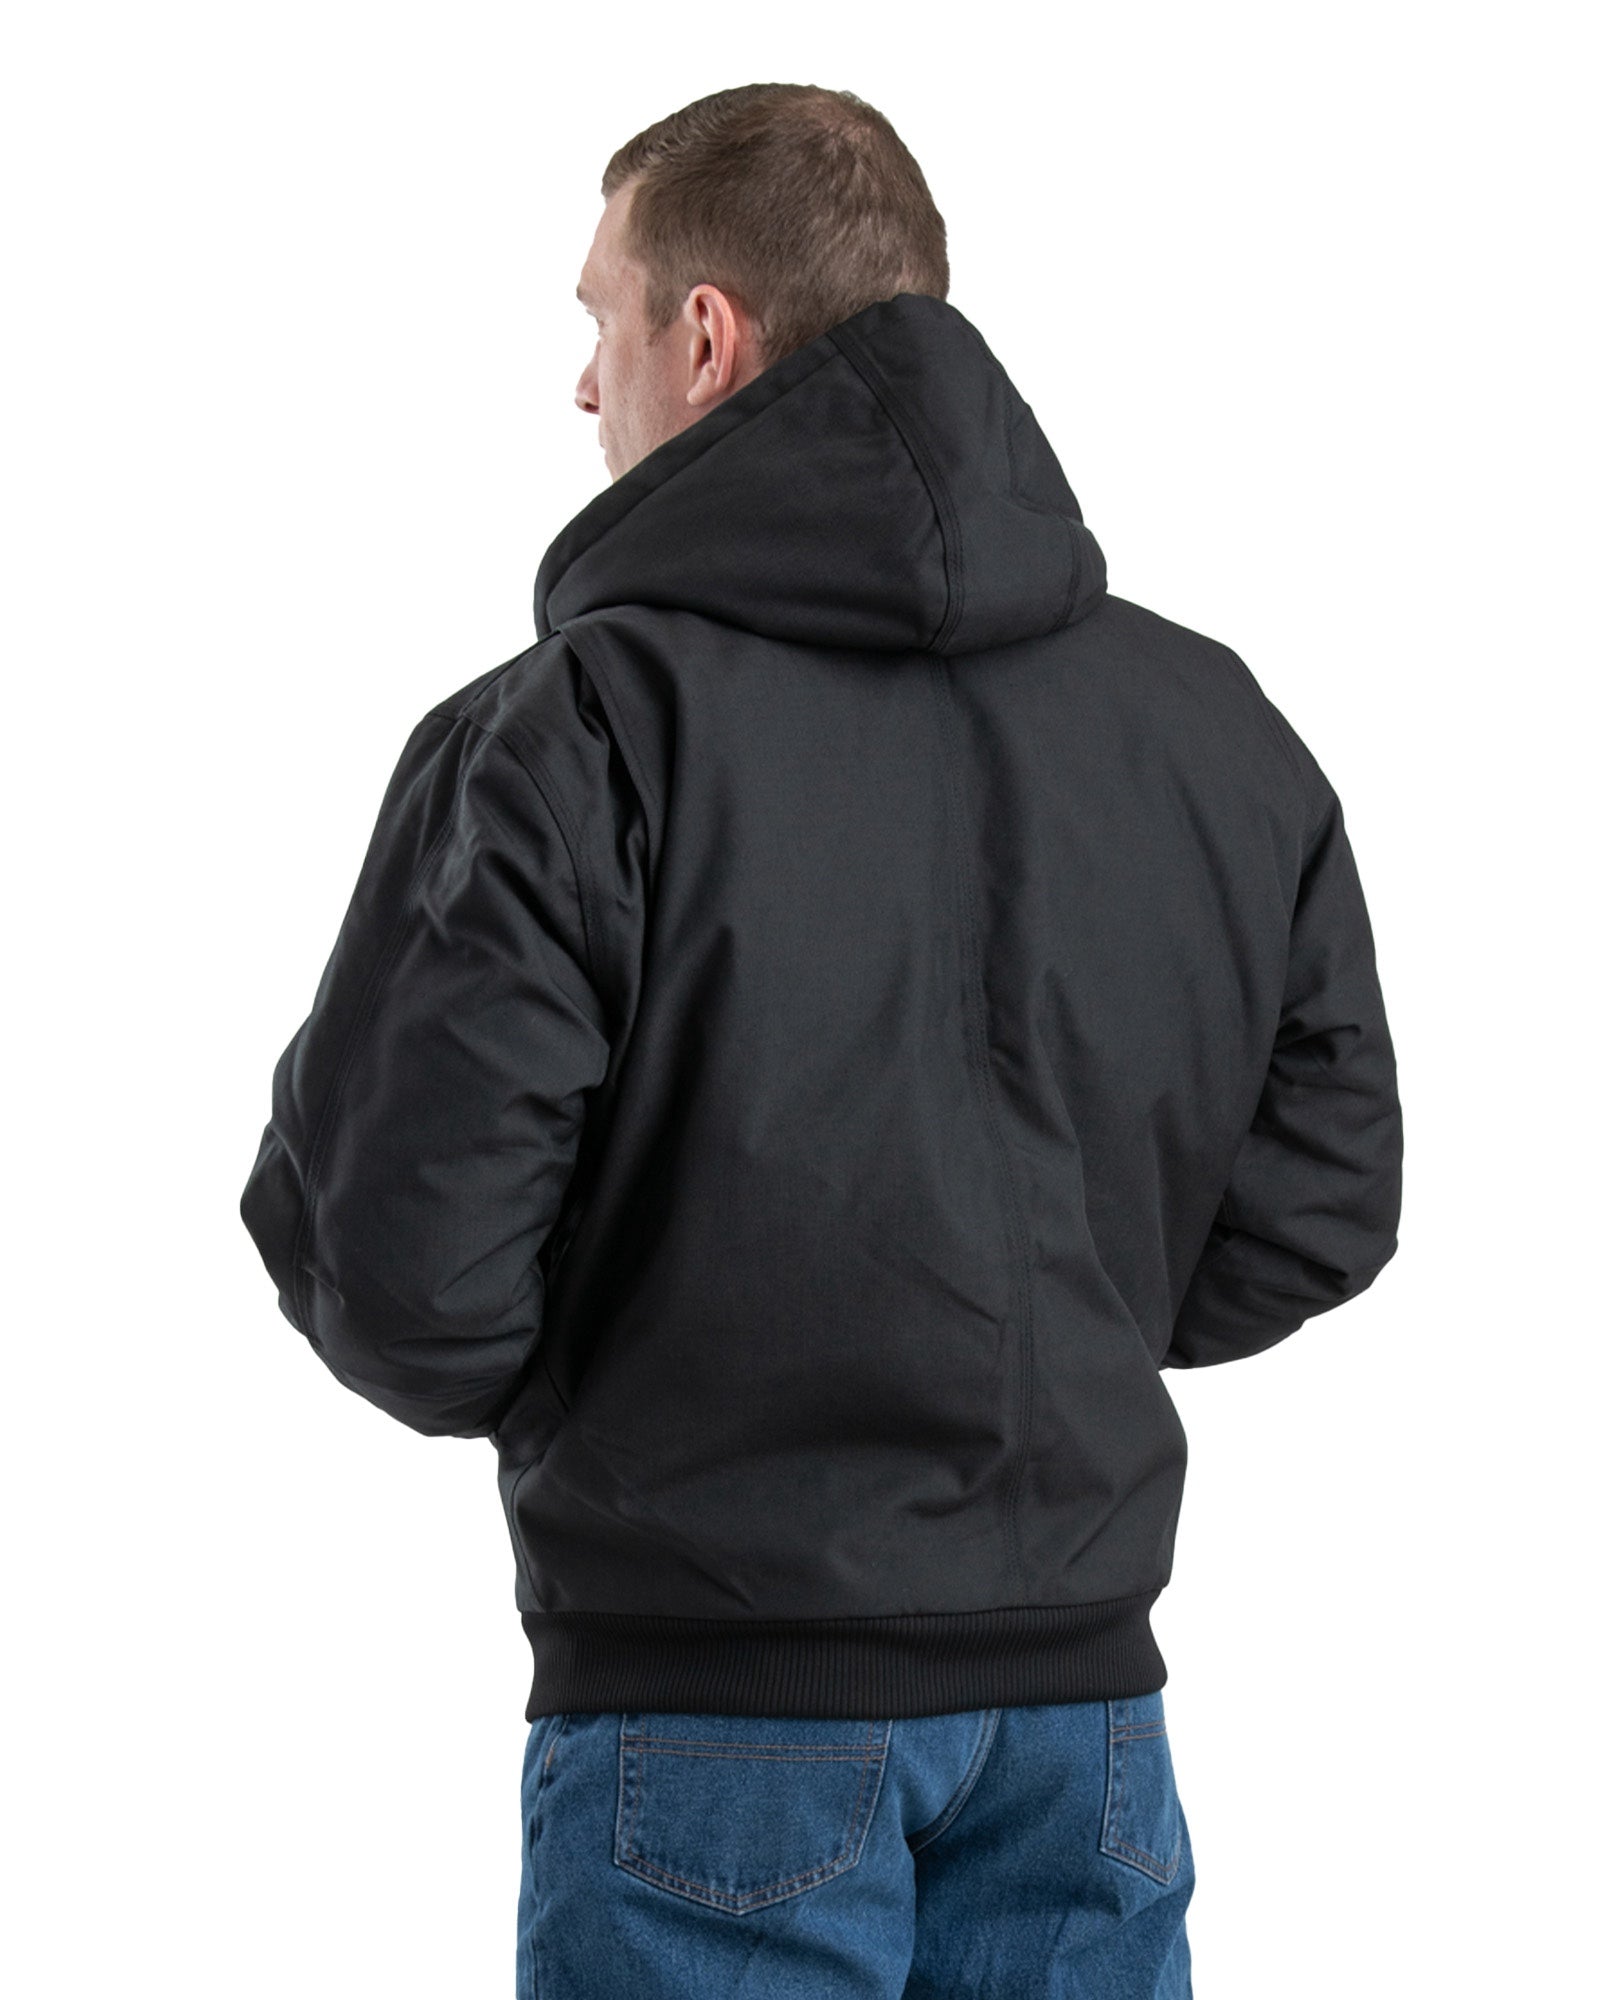 NJ51BK Icecap Insulated Hooded Jacket